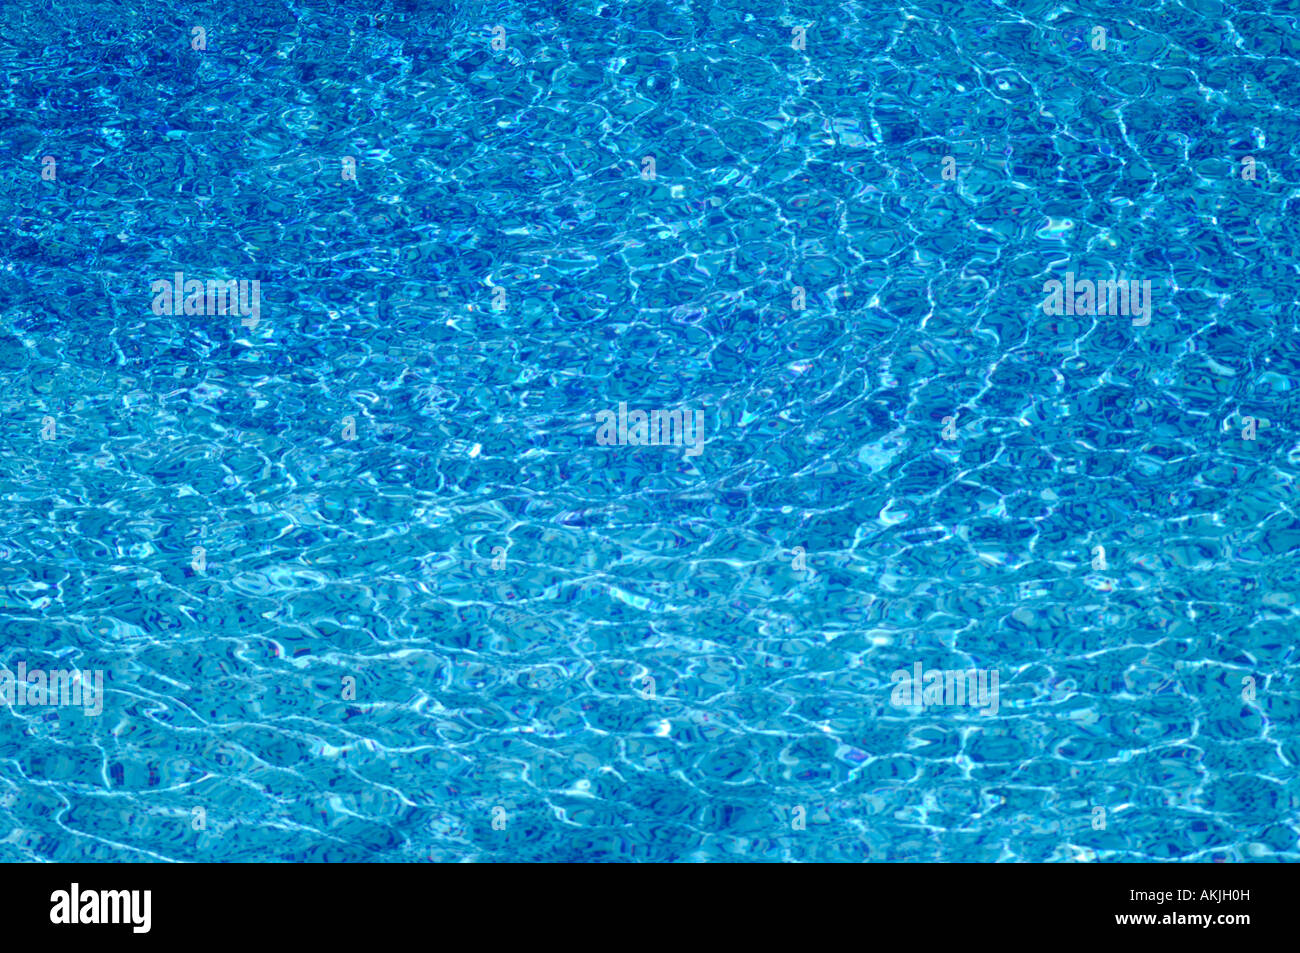 Les ondes à la surface de l'eau créent des motifs aléatoires de la lumière réfractée sur le fond d'une piscine Banque D'Images